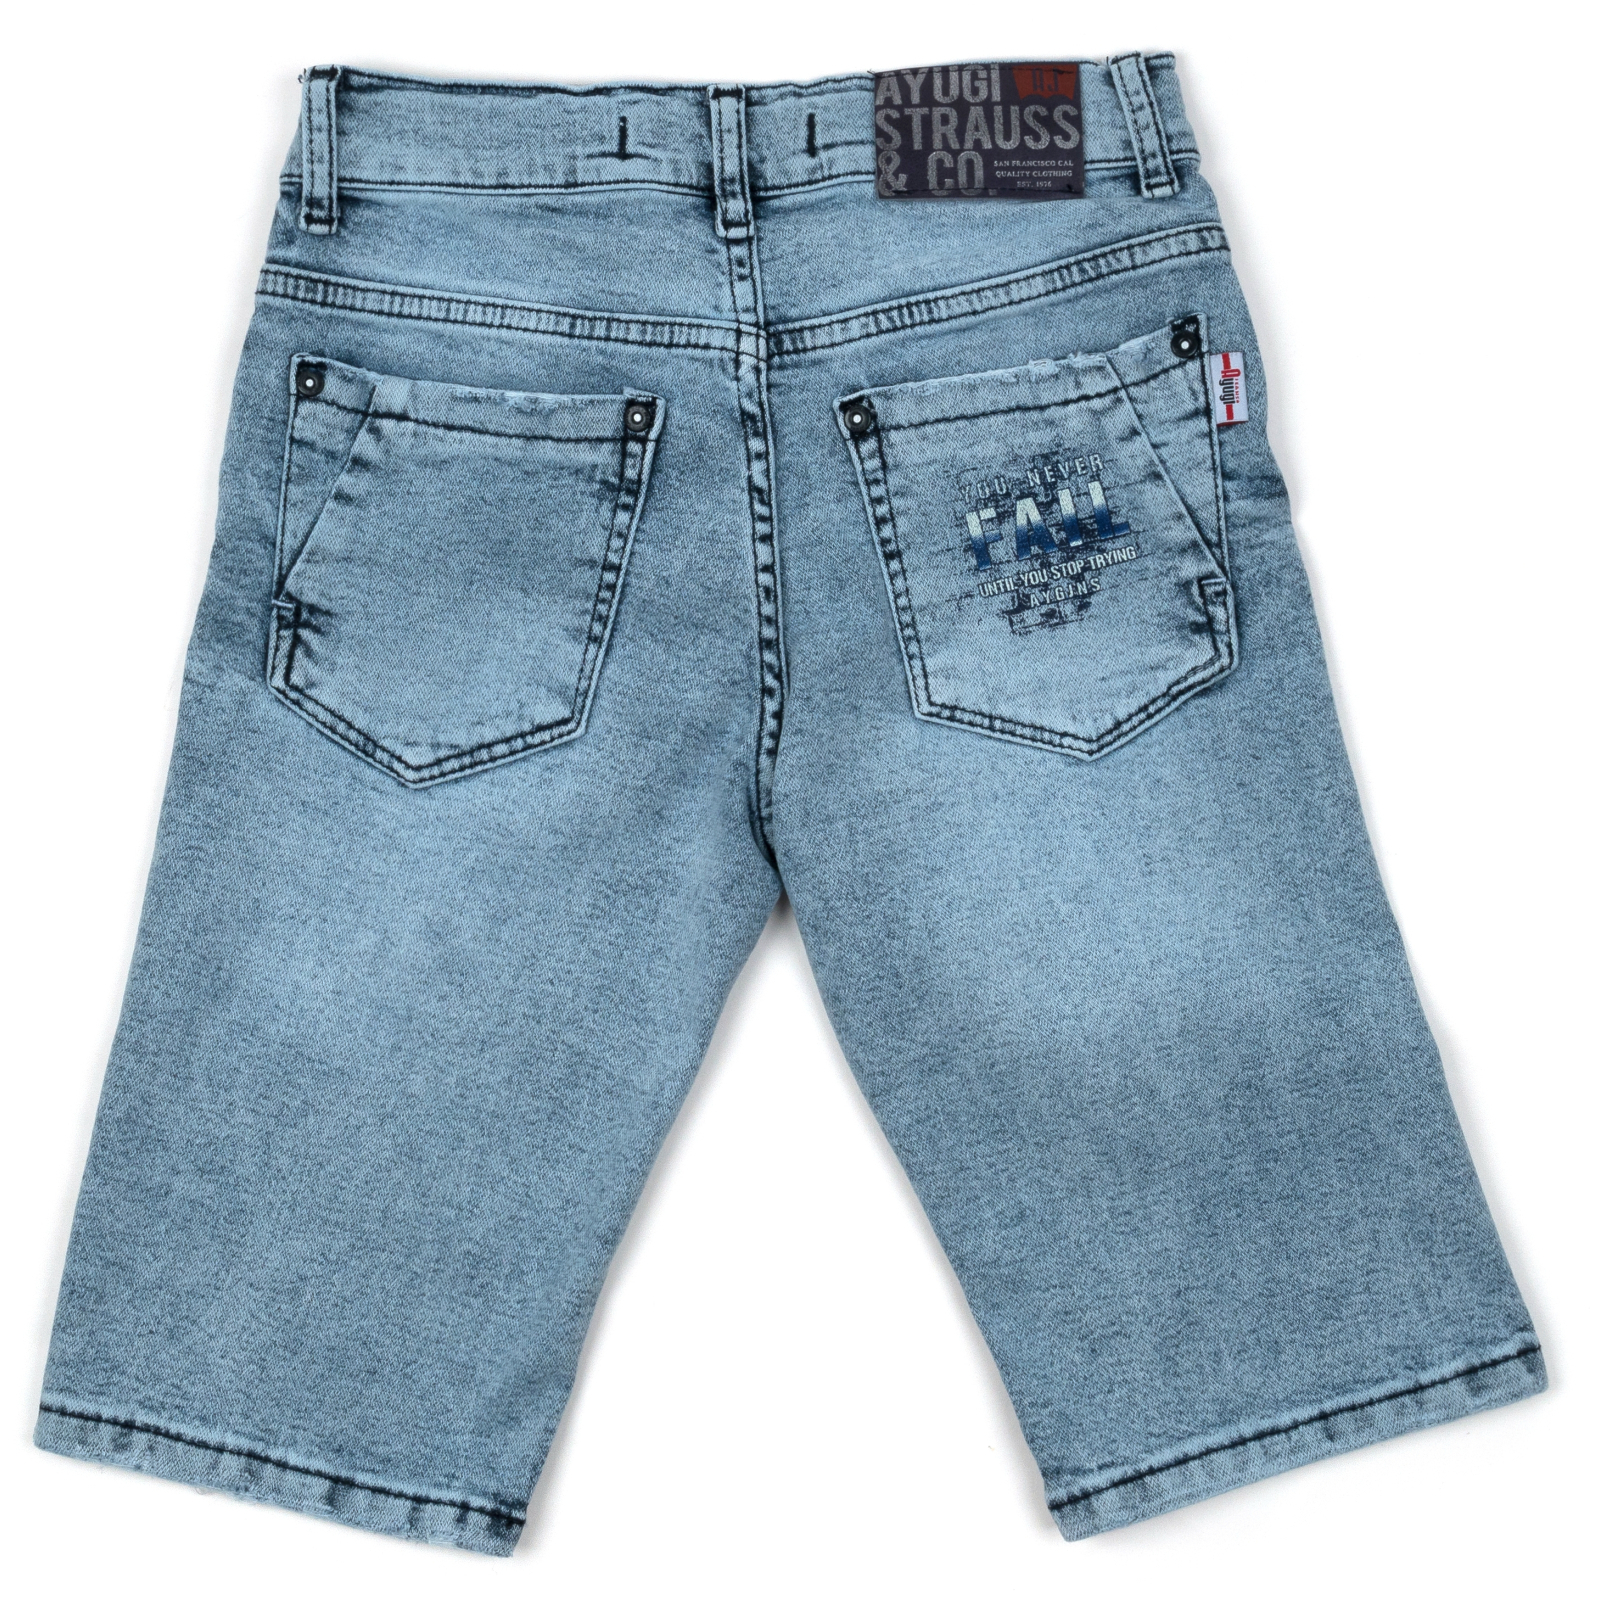 Шорты A-Yugi джинсовые (5260-164B-blue) изображение 2